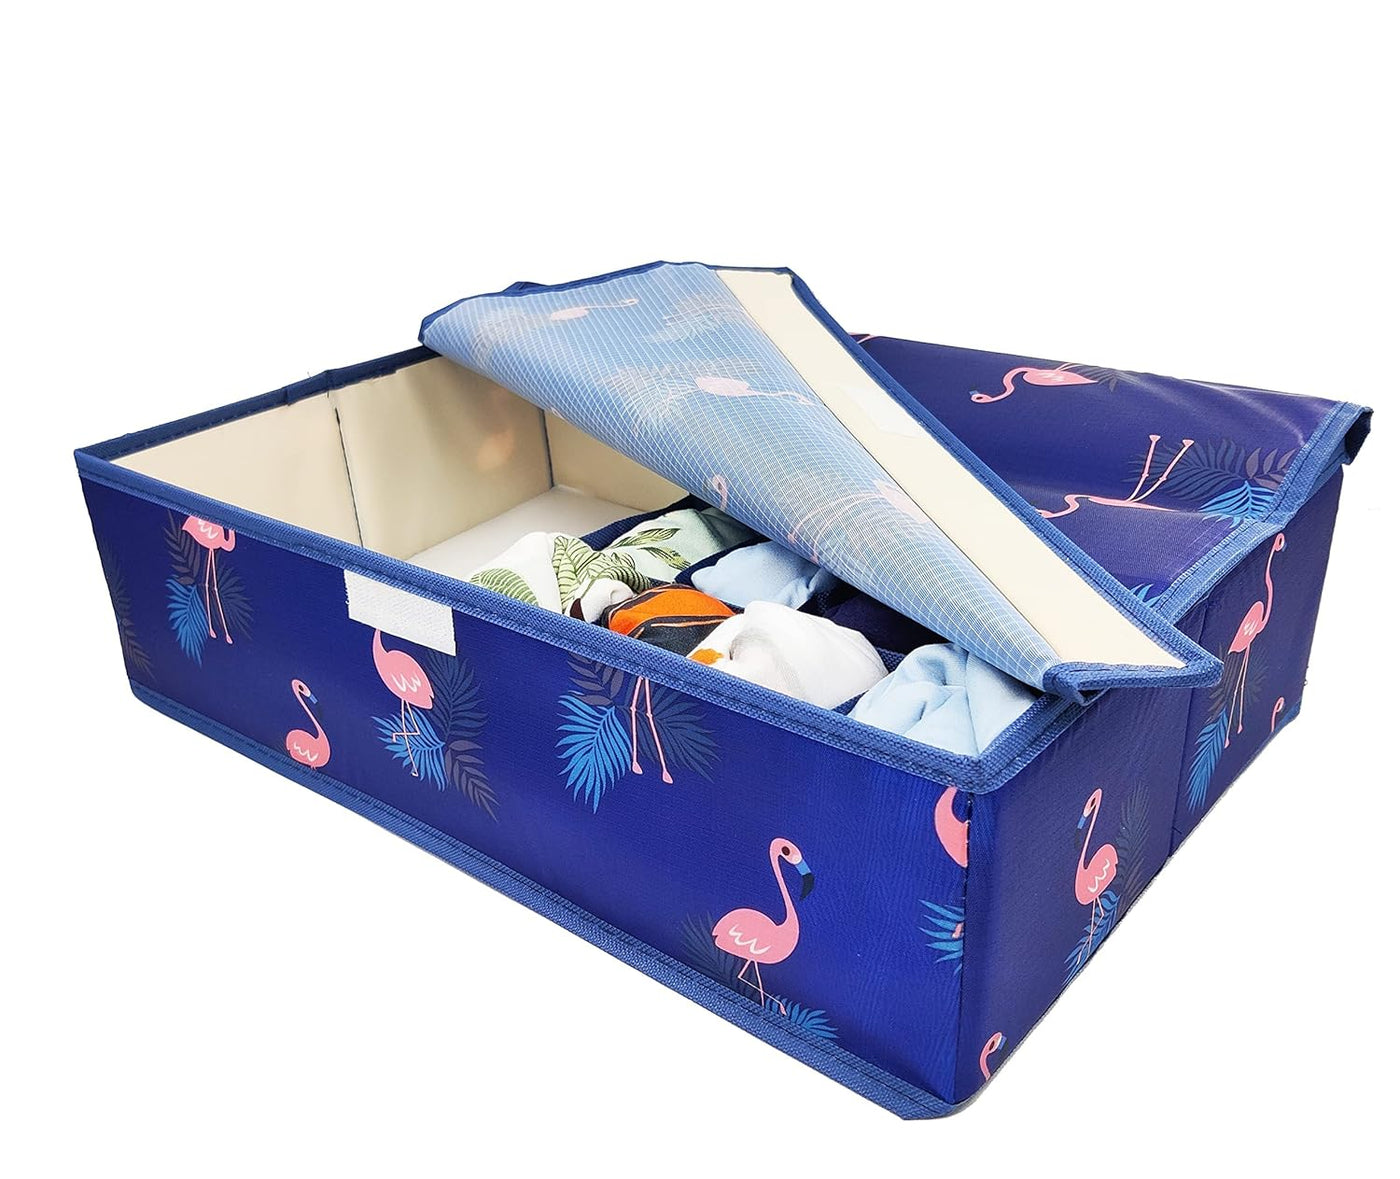 Innerwear Organizer 15+1 Compartment Non-Smell Non Woven Foldable Fabric Storage Box for Closet - Blue Flamingo